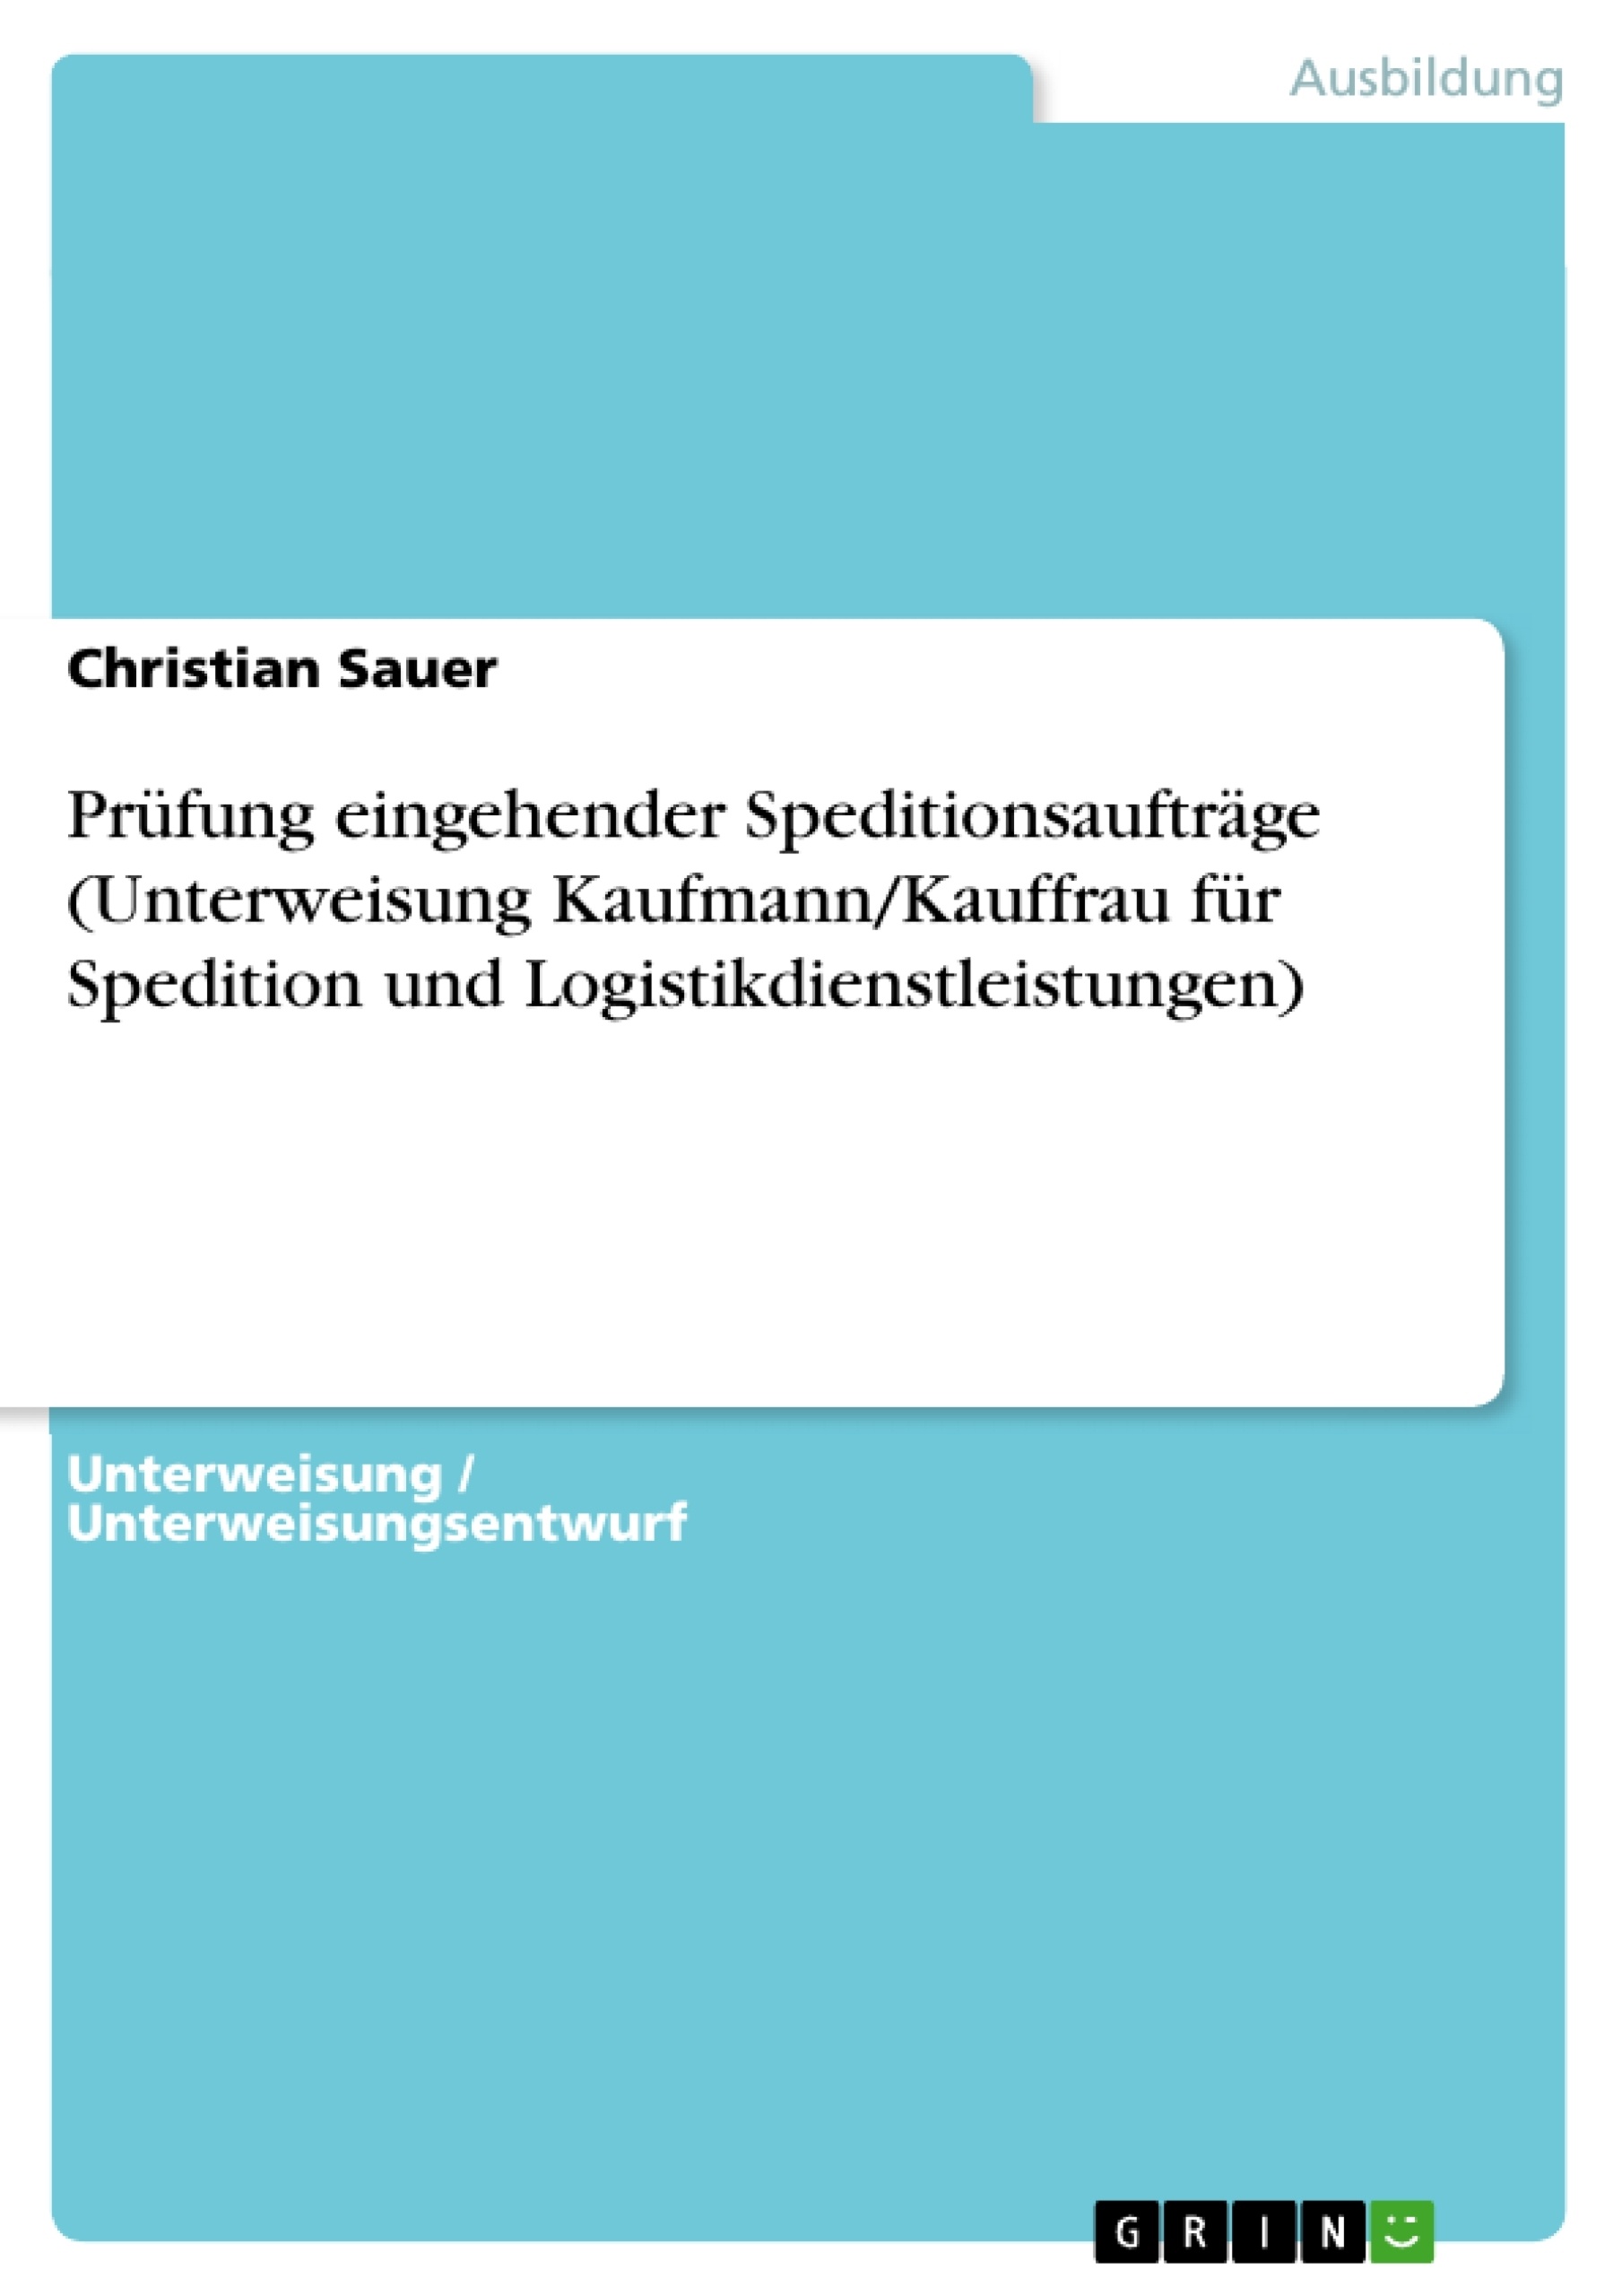 Titre: Prüfung eingehender Speditionsaufträge (Unterweisung Kaufmann/Kauffrau für Spedition und Logistikdienstleistungen)